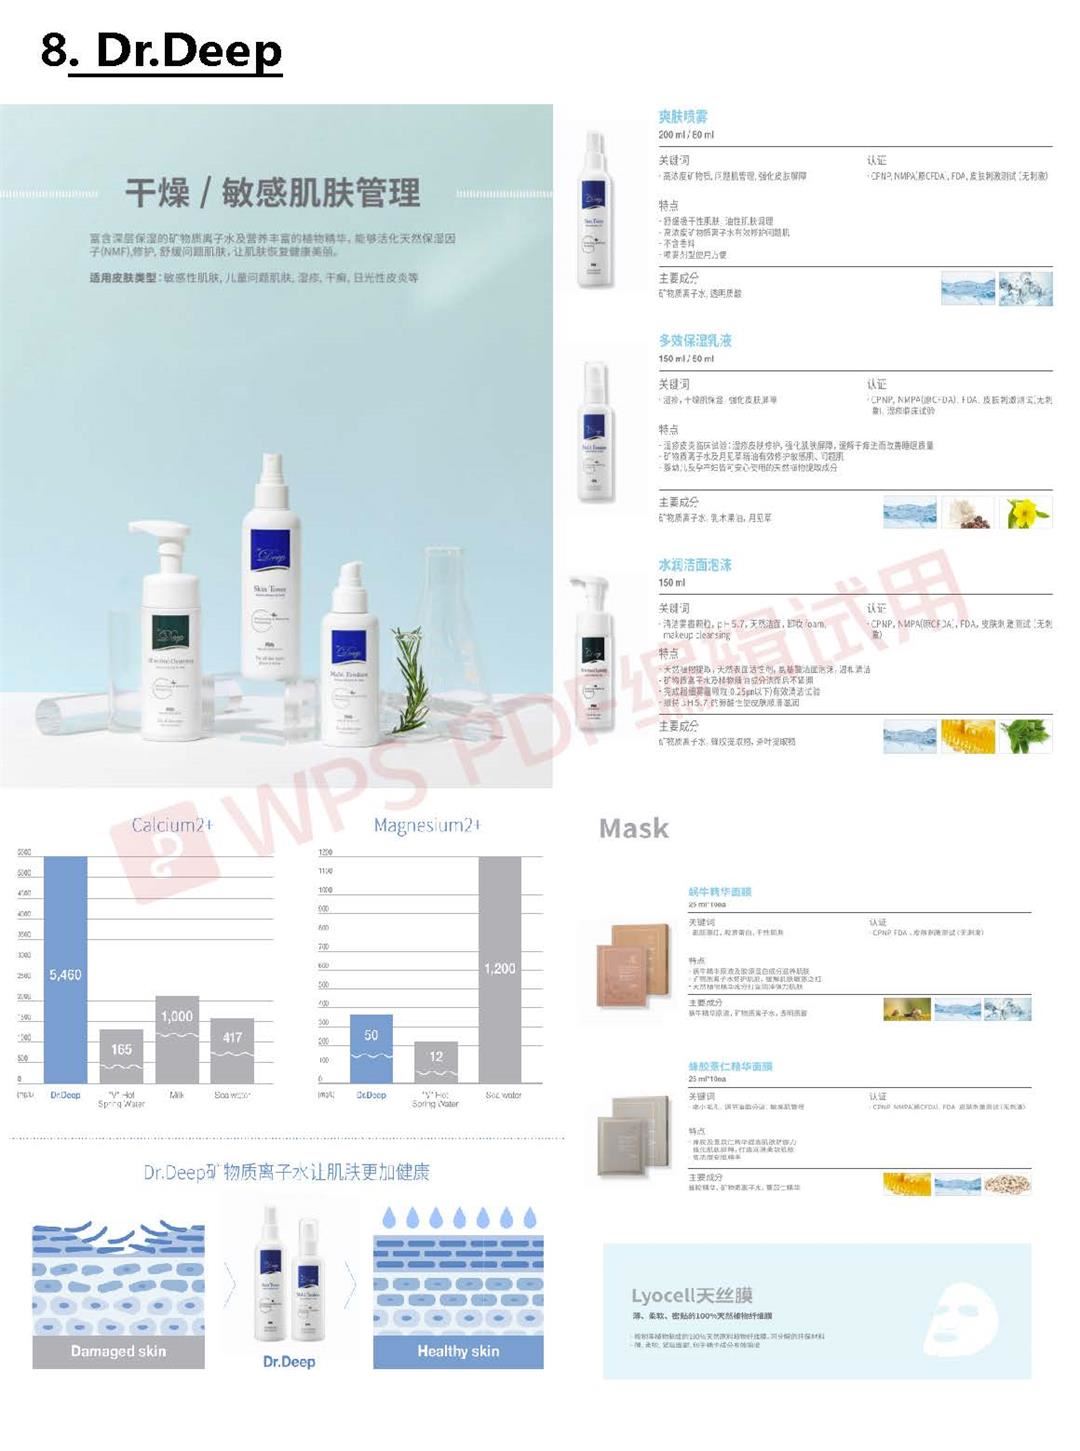 2021 중국(상해)화장품시장개척지원_8월4일 (2)_加水印_页面_10.jpg